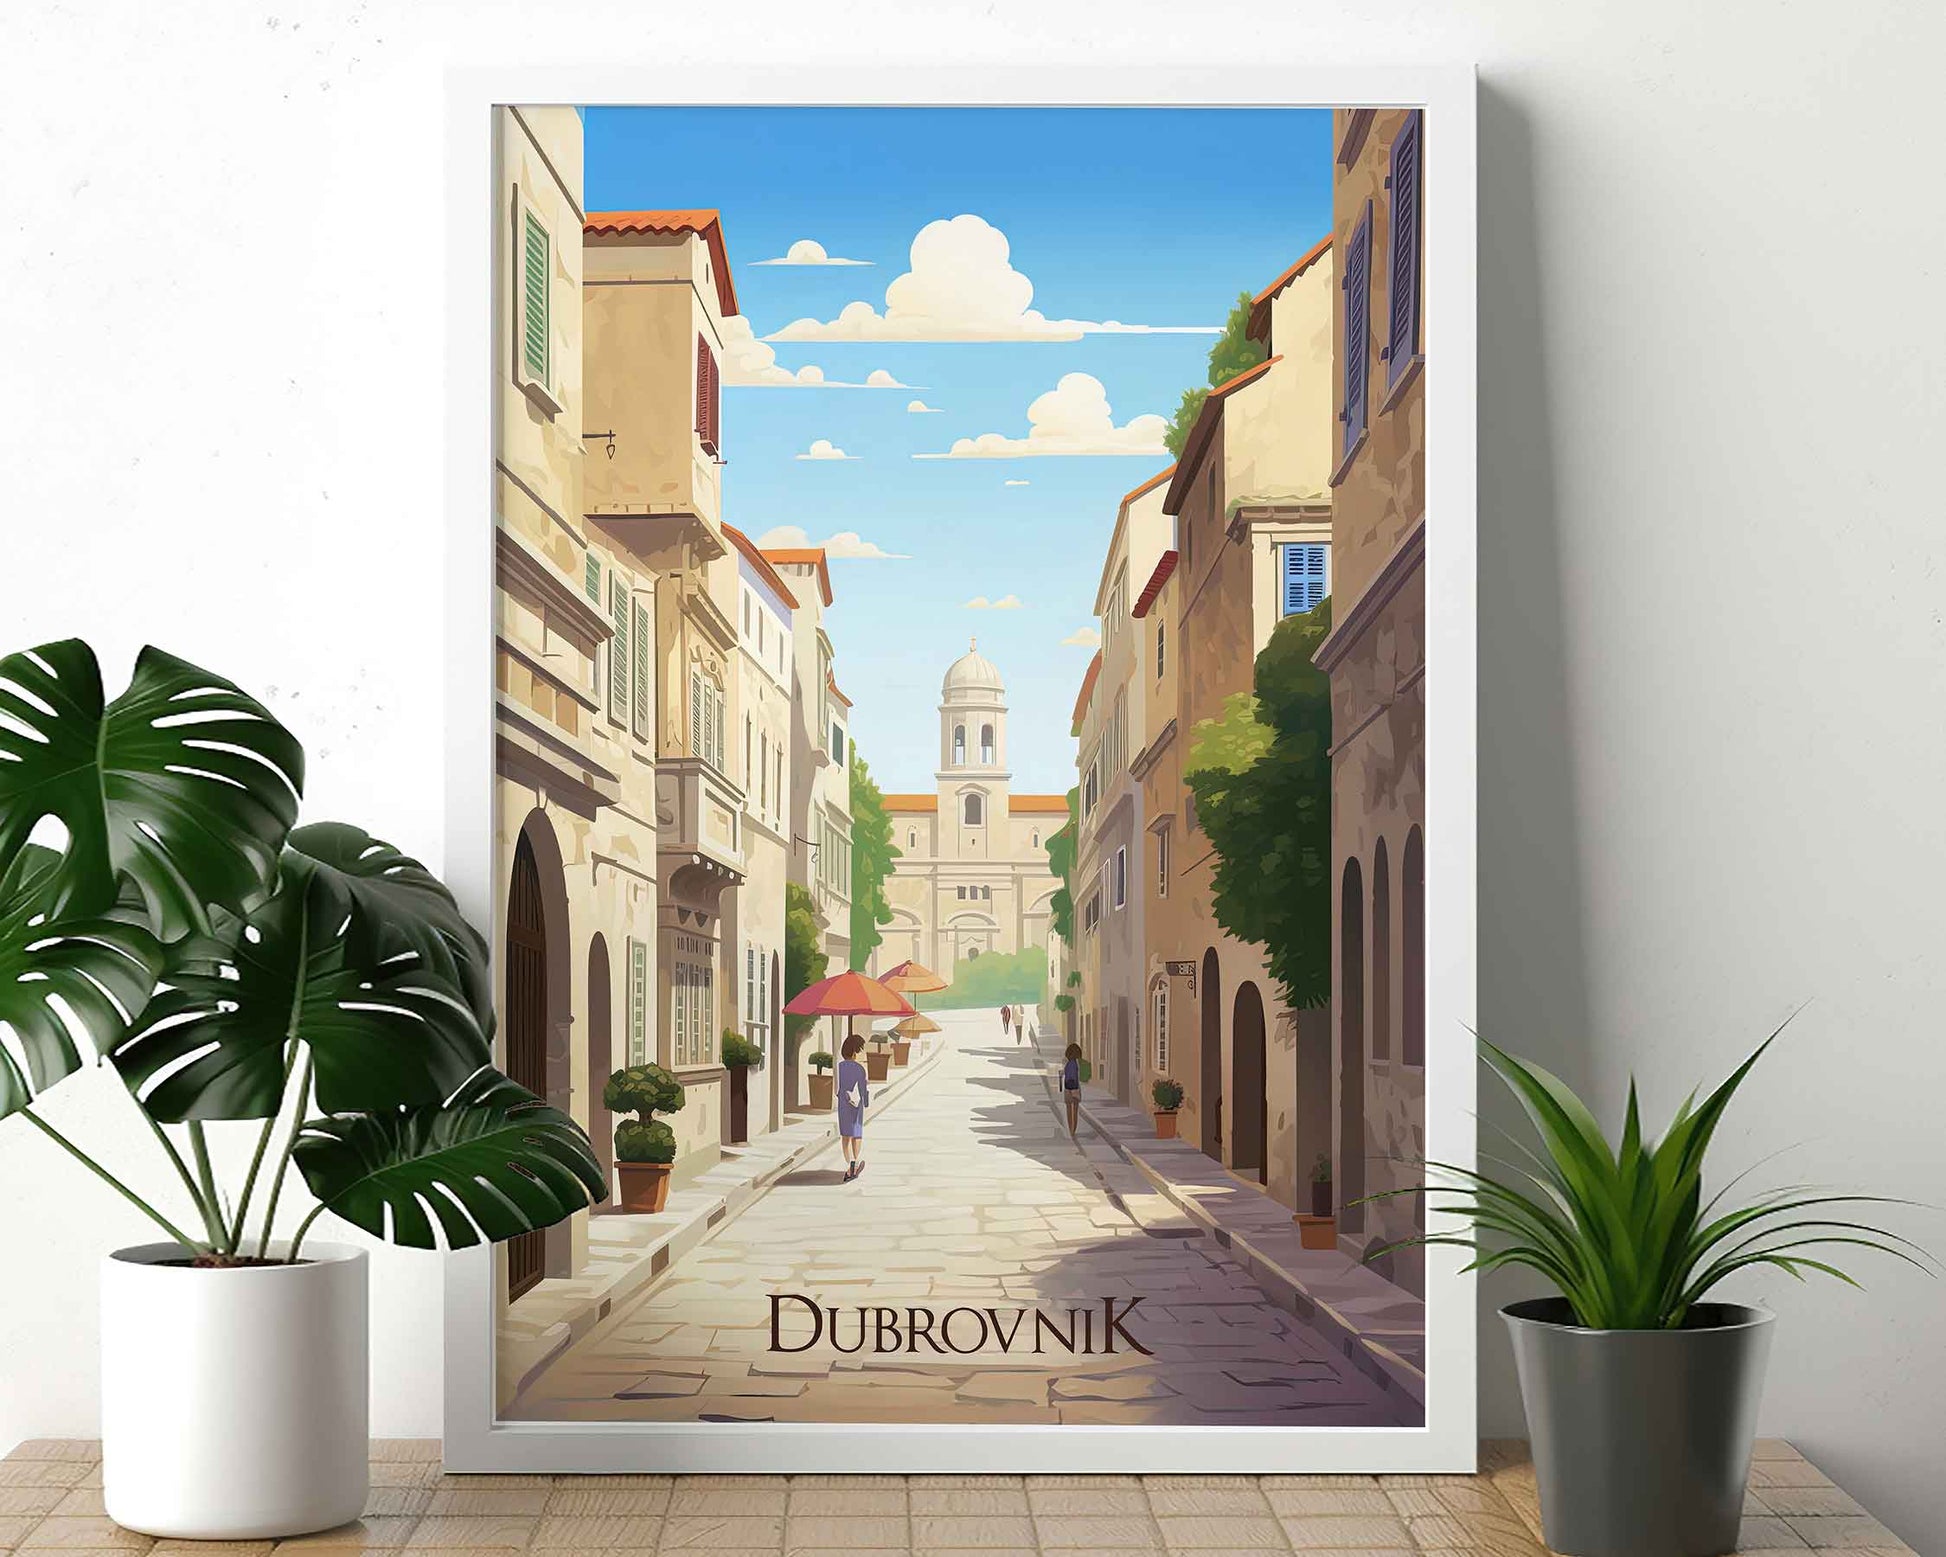 Framed Image of Dubrovnik Croatia Wall Art Travel Poster Prints Illustration